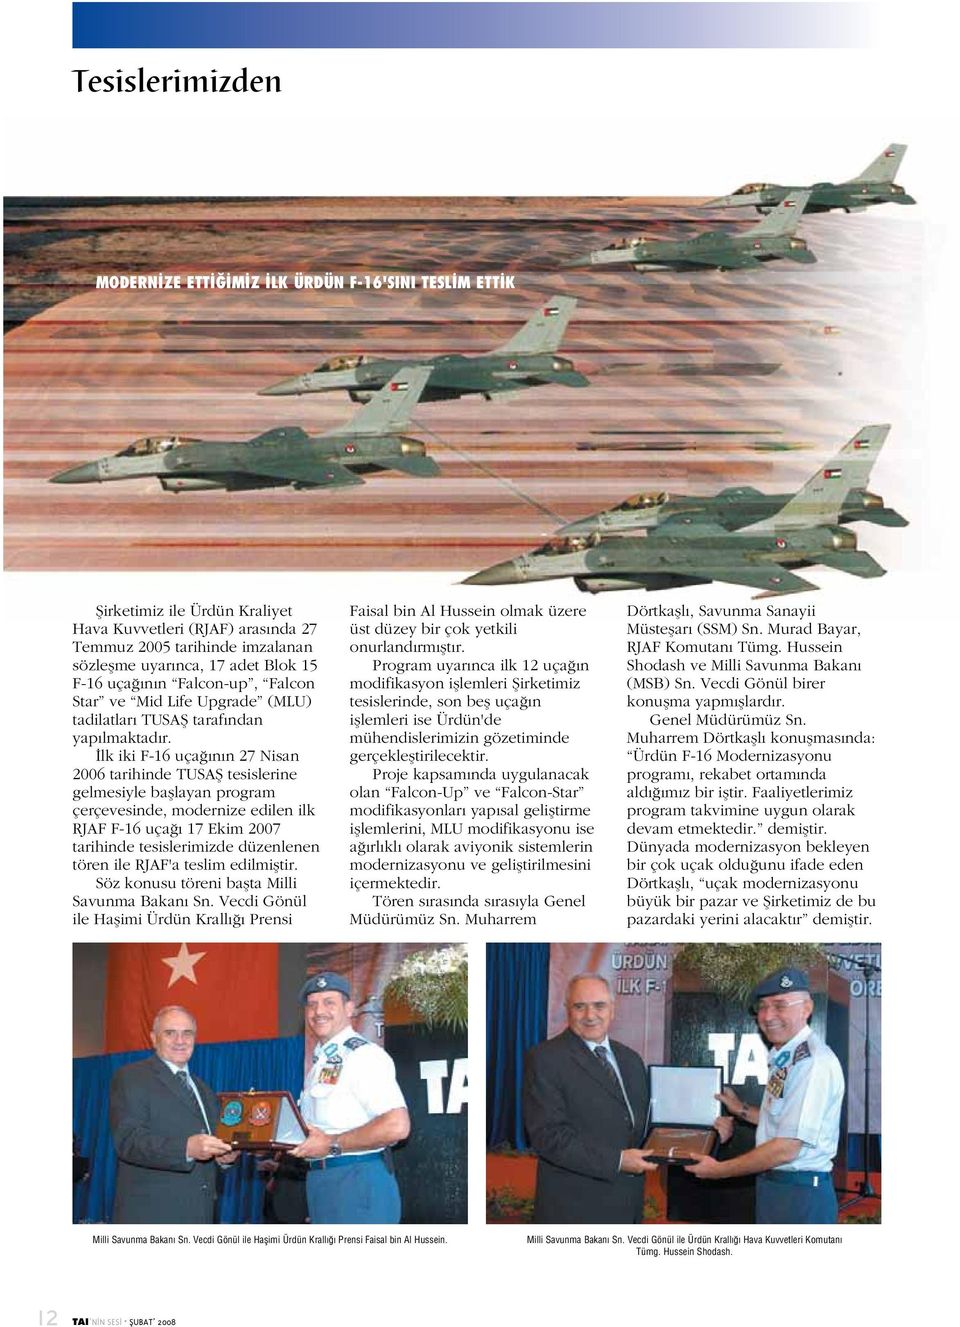 İlk iki F-16 uçağının 27 Nisan 2006 tarihinde TUSAŞ tesislerine gelmesiyle başlayan program çerçevesinde, modernize edilen ilk RJAF F-16 uçağı 17 Ekim 2007 tarihinde tesislerimizde düzenlenen tören